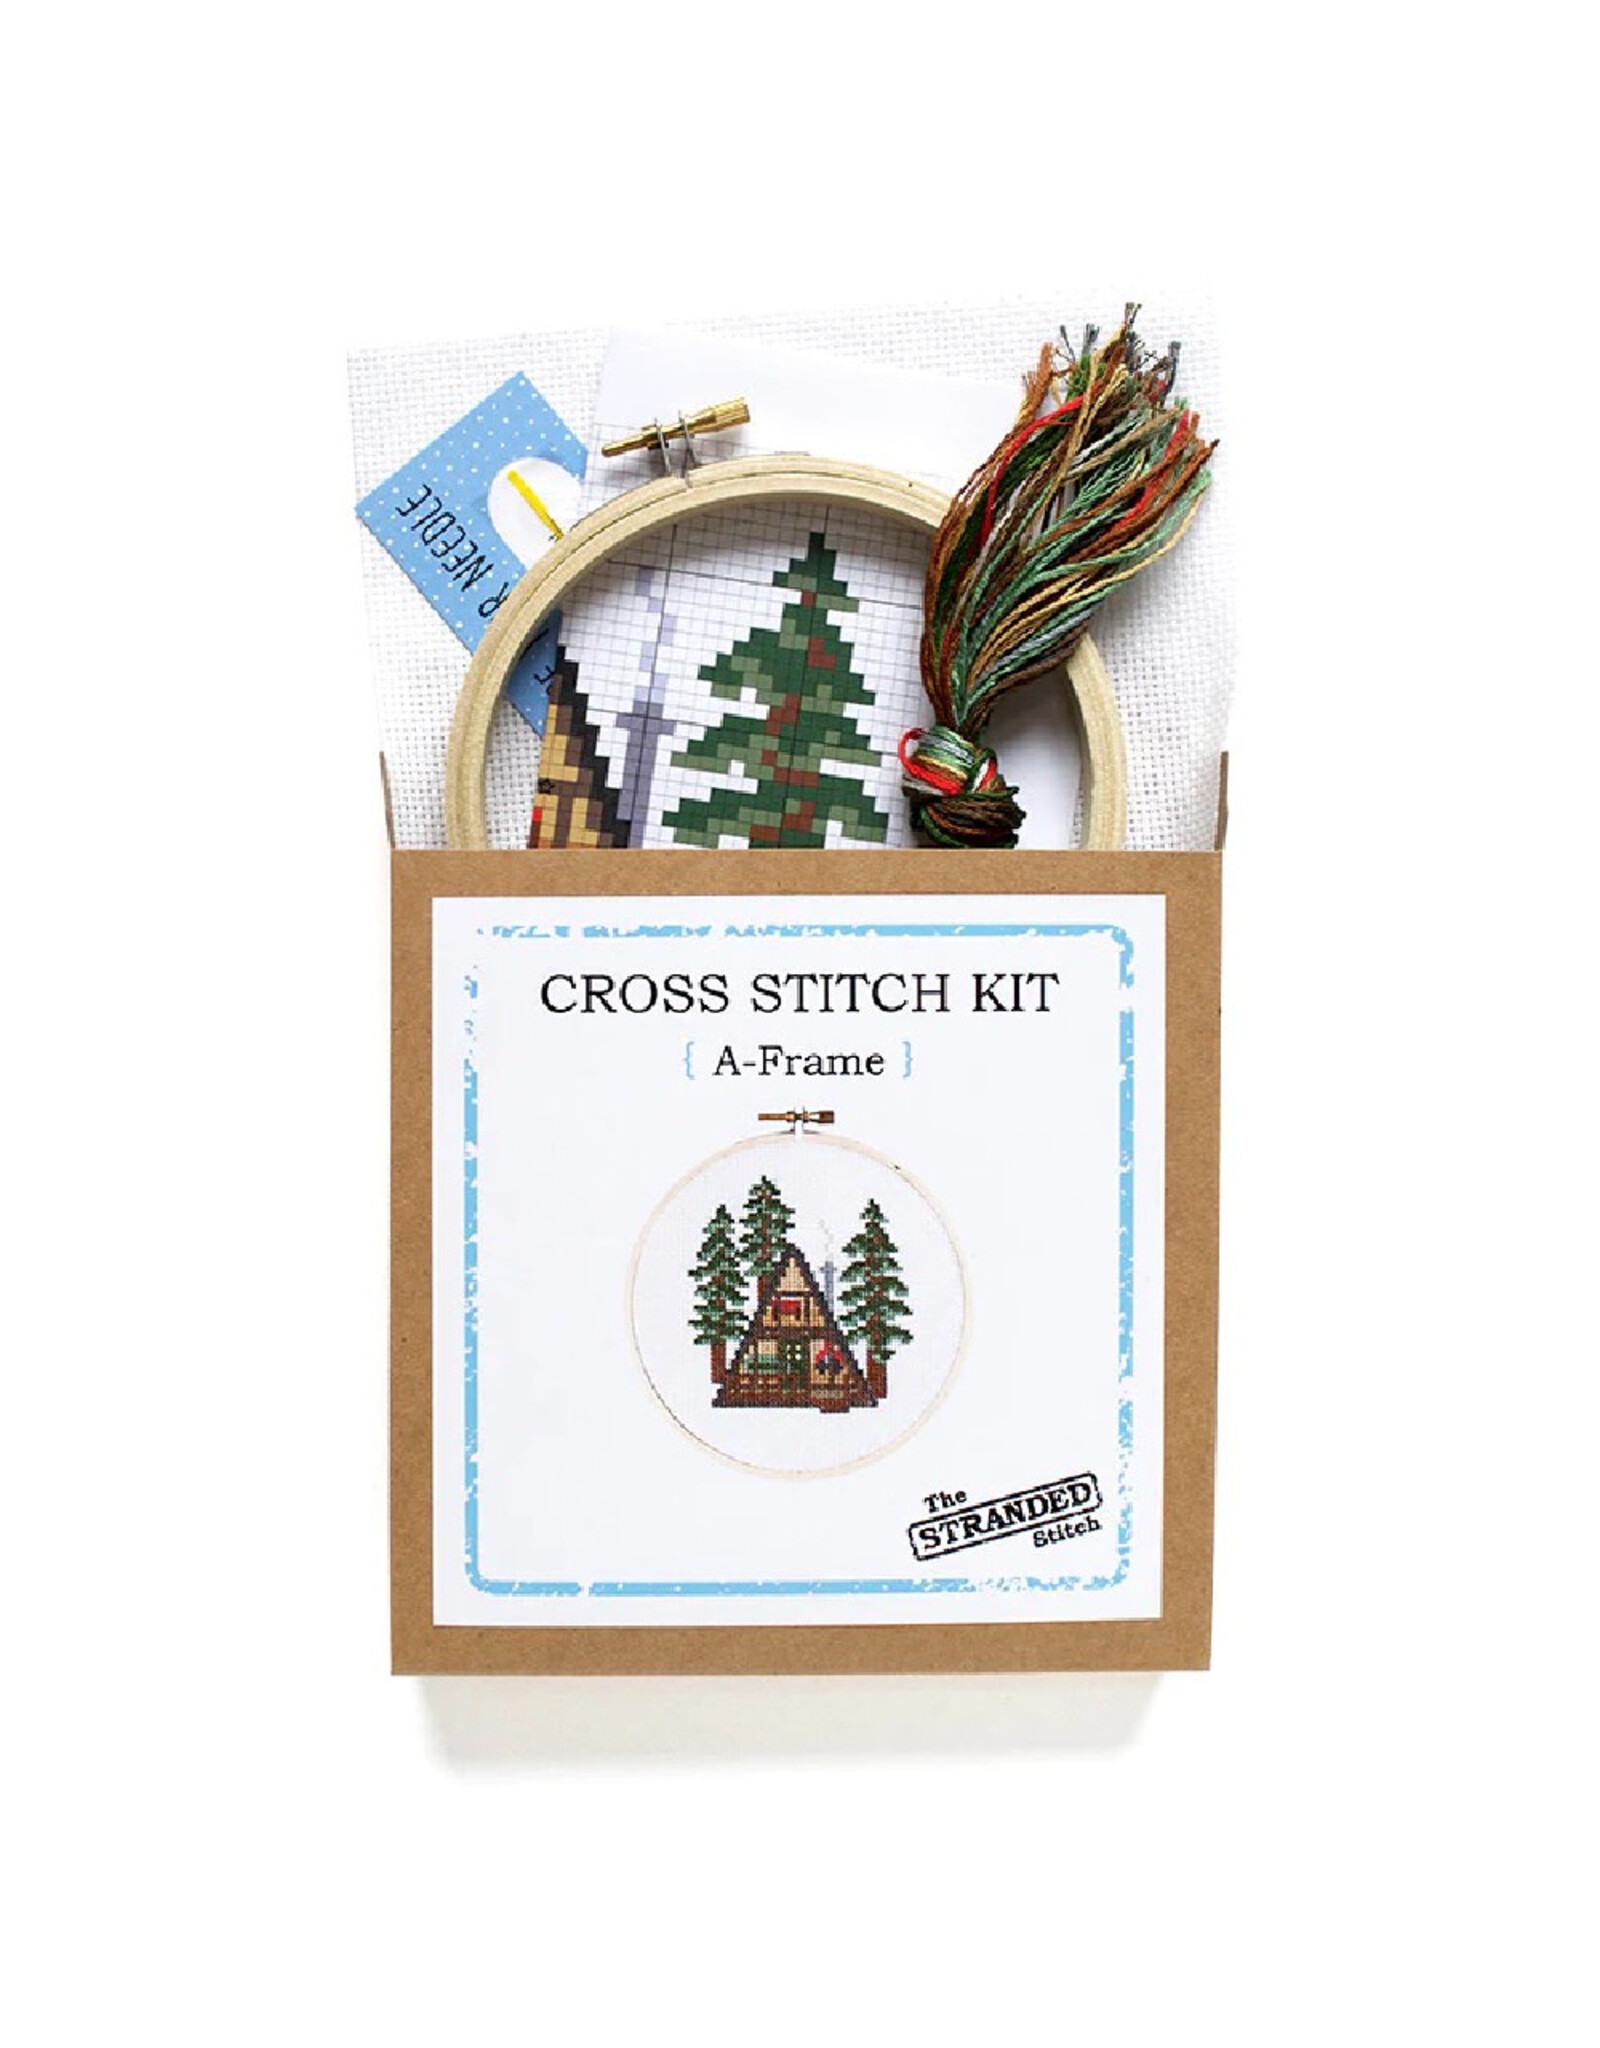 The Stranded Stitch A-Frame Cross Stitch Kit